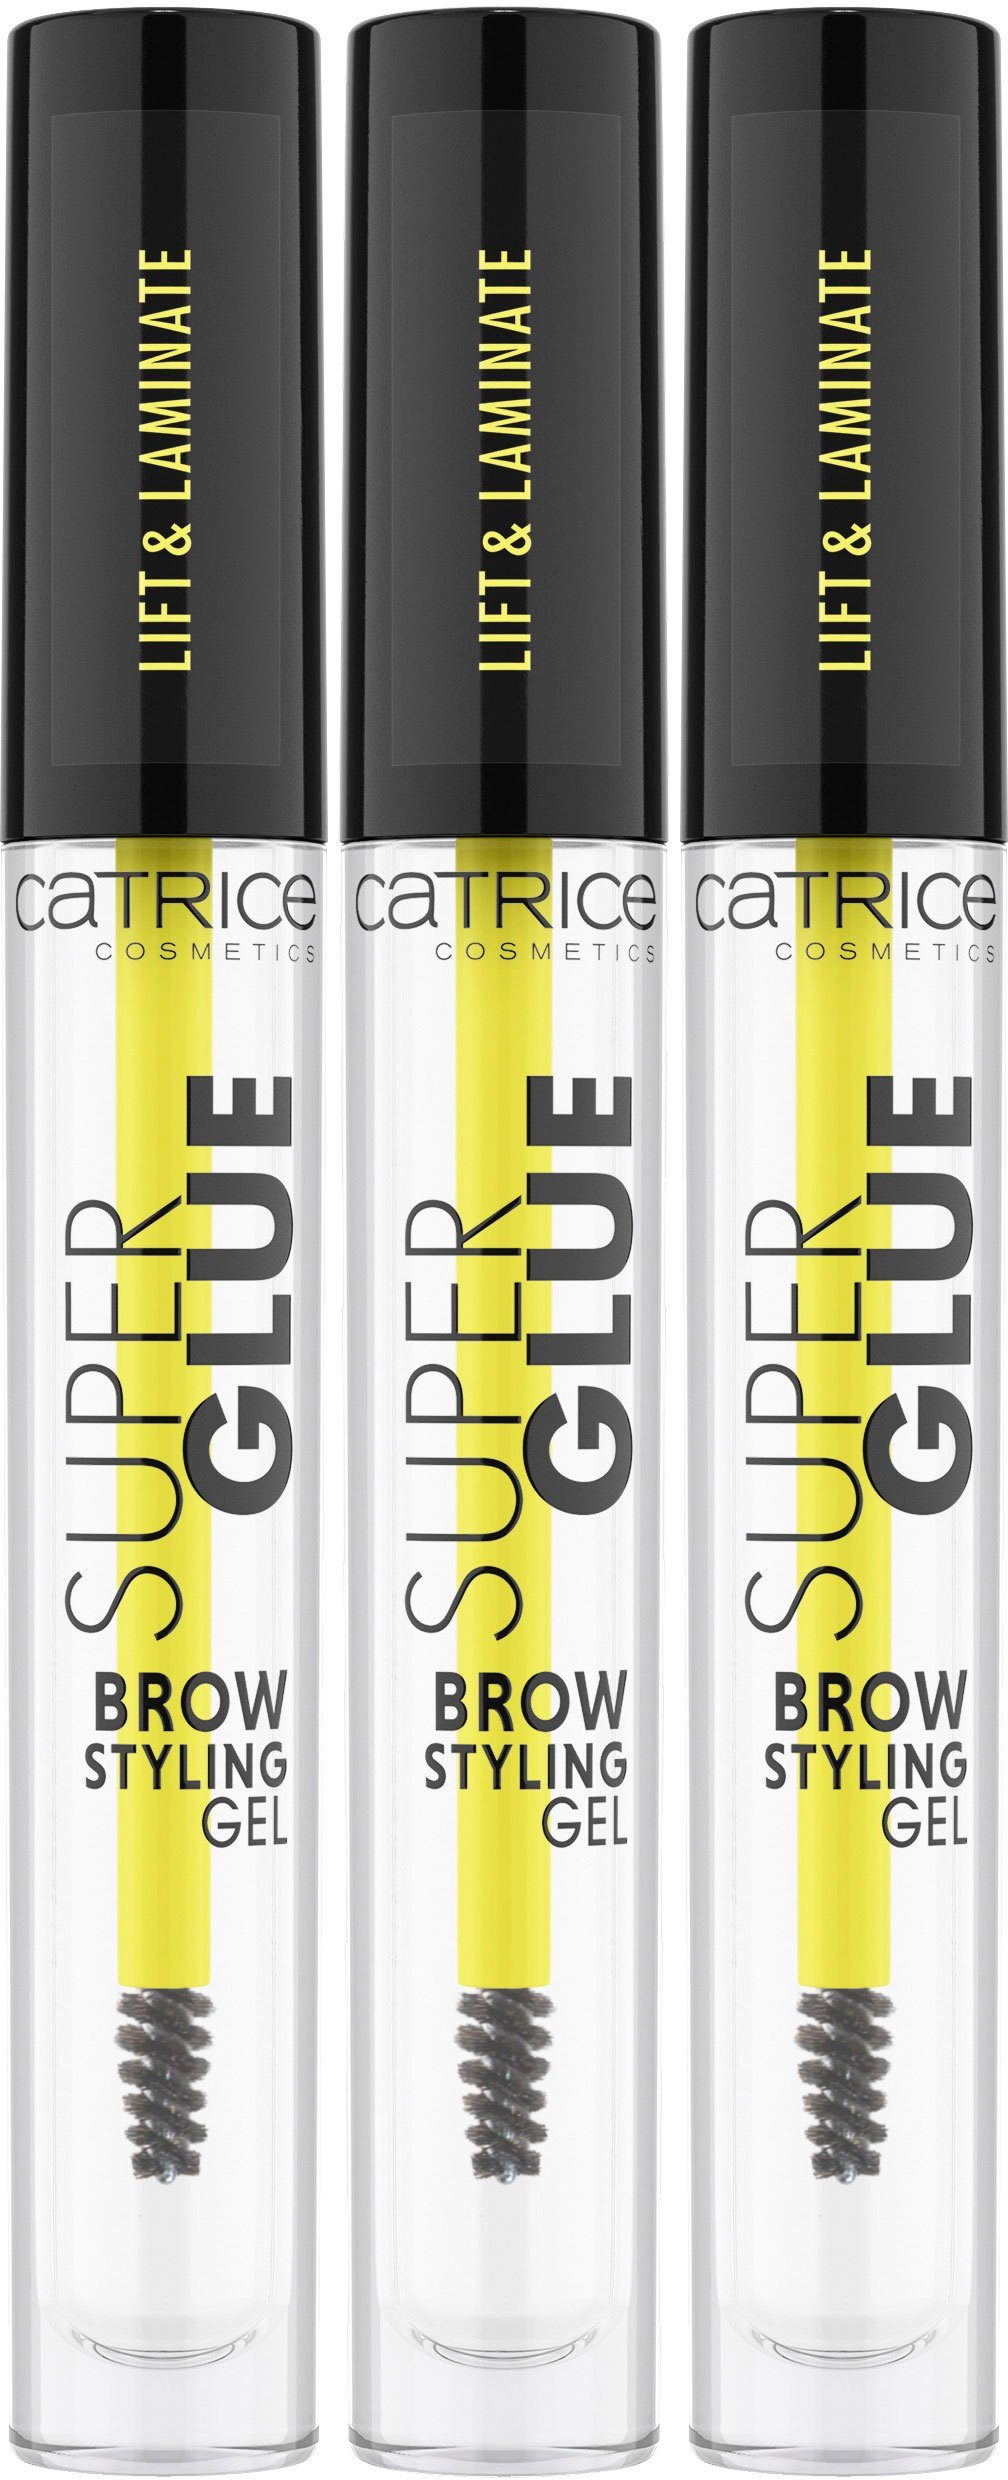 Glue Augenbrauen-Gel Catrice Brow Super ultrastarken Styling Gel Augen-Make-Up, Gel, Brow 3-tlg., für Halt